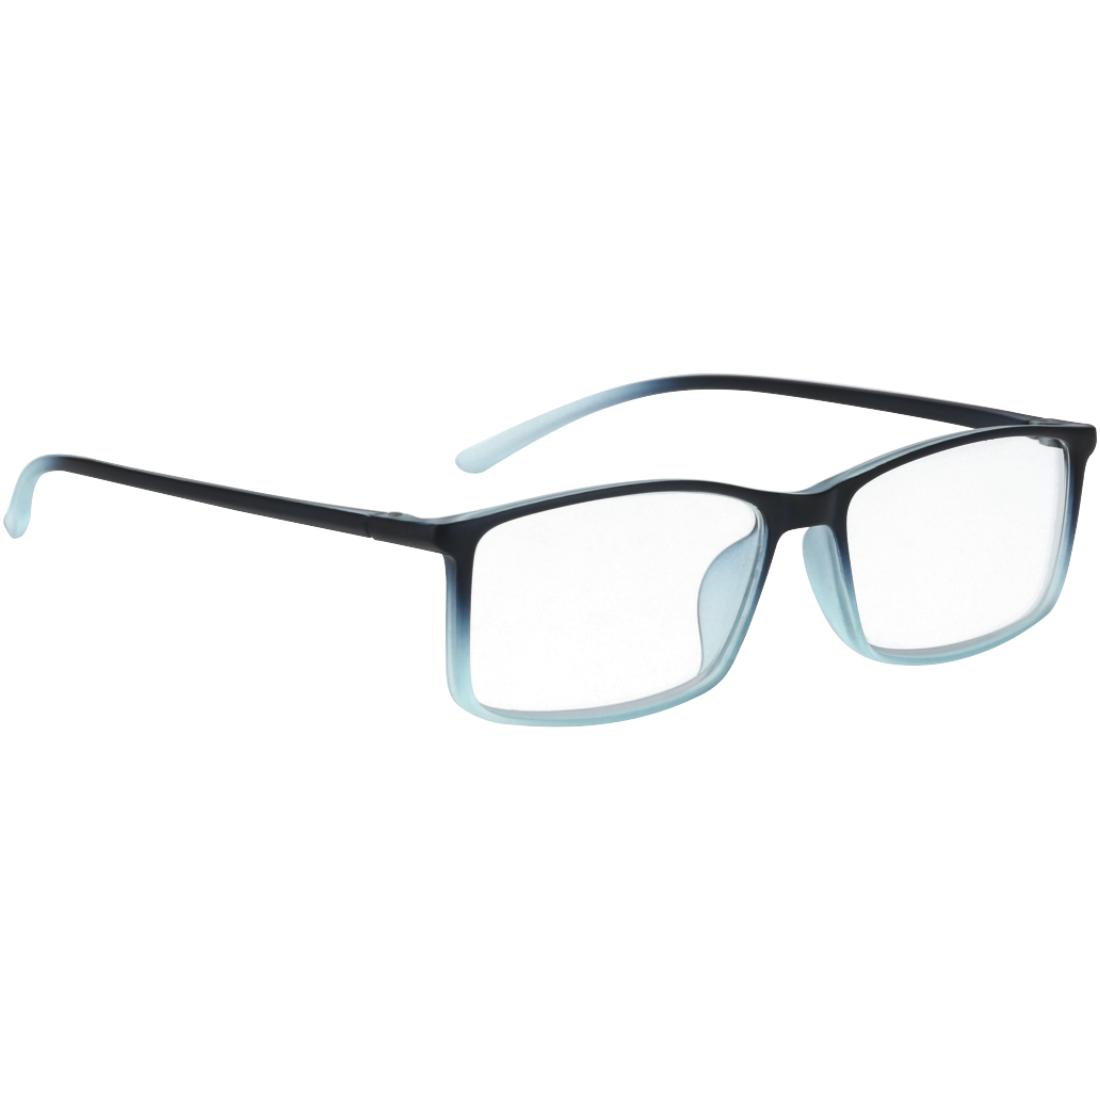 leg uit zacht Elektropositief Leesbril, kunststof, blauw, kleurverloop, +1,5 dpt - Leesbril - ideale  leesbril voor onderweg in handtas, rugzak etc. ,- modern, chique  kunststofmodel voor dames en heren ,- harmonieus kleurverloop van  donkerblauw naar transparant